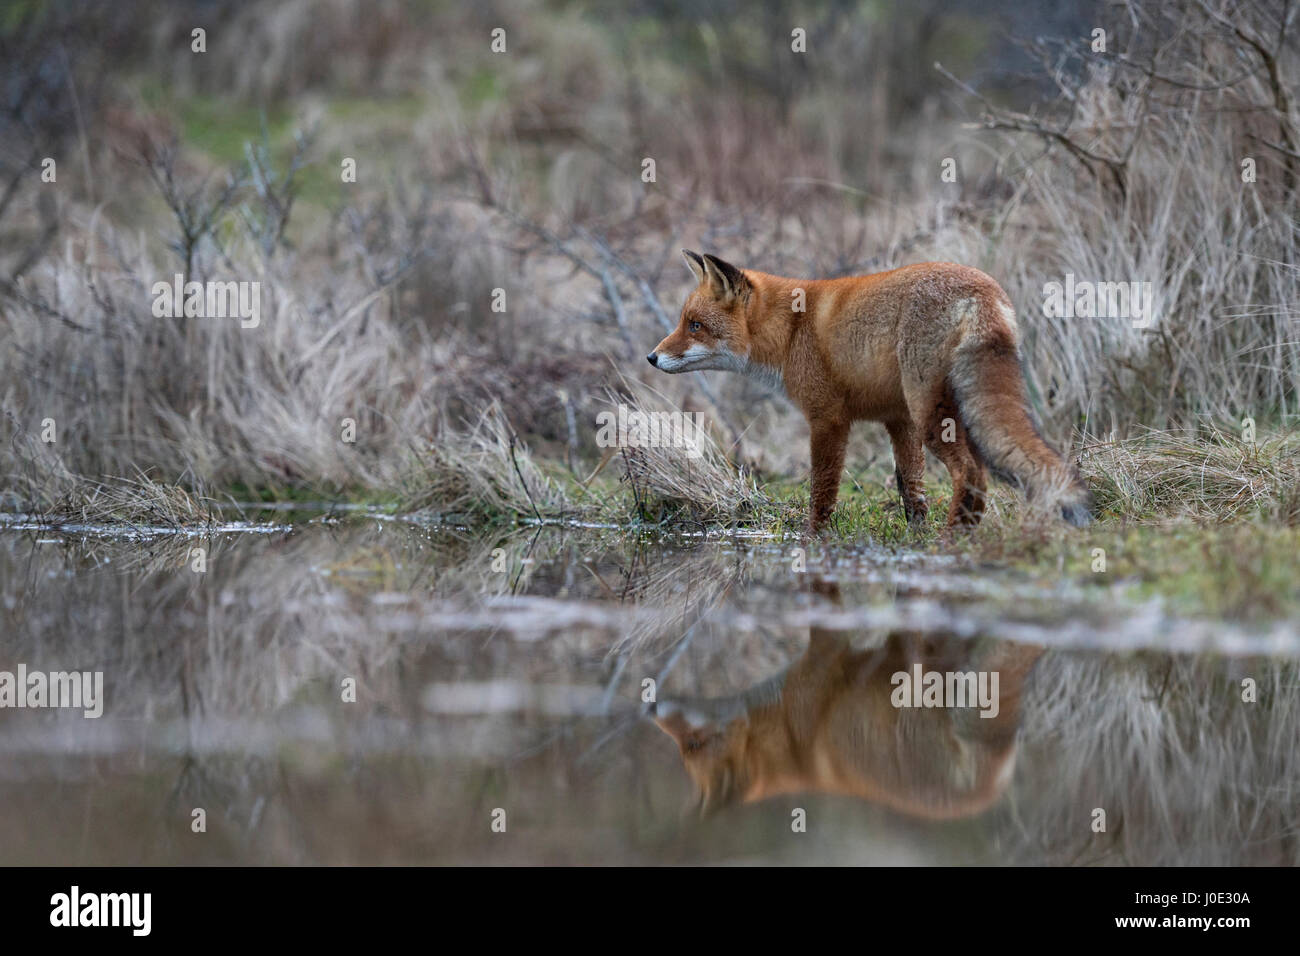 Red Fox / Rotfuchs ( Vulpes vulpes ) la chasse à un plan d'eau, debout au bord d'un petit étang, à l'image sur la surface de l'eau était claire. Banque D'Images